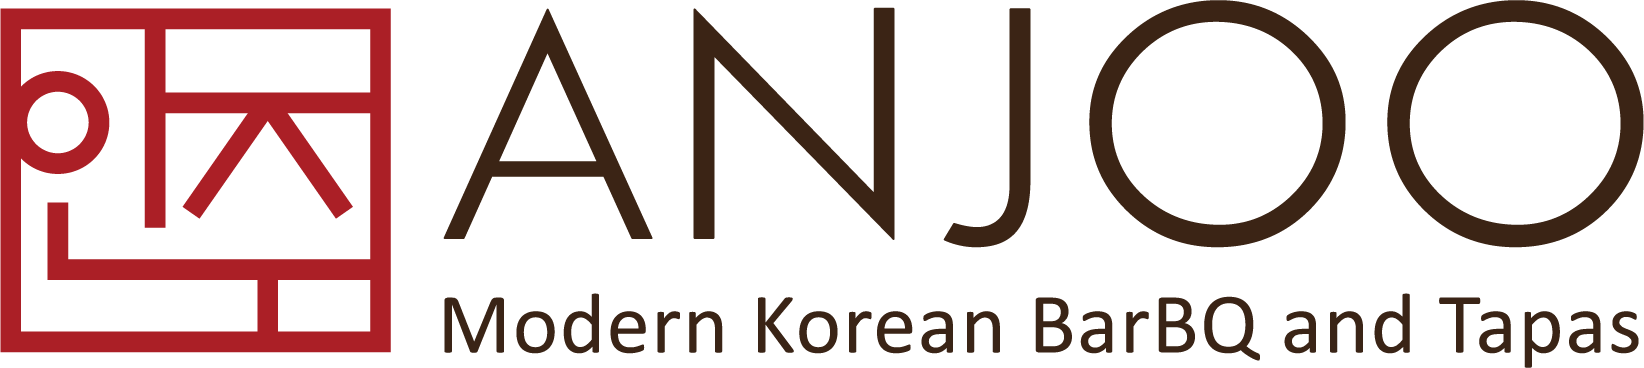 Anjoo Korean BarBQ logo top